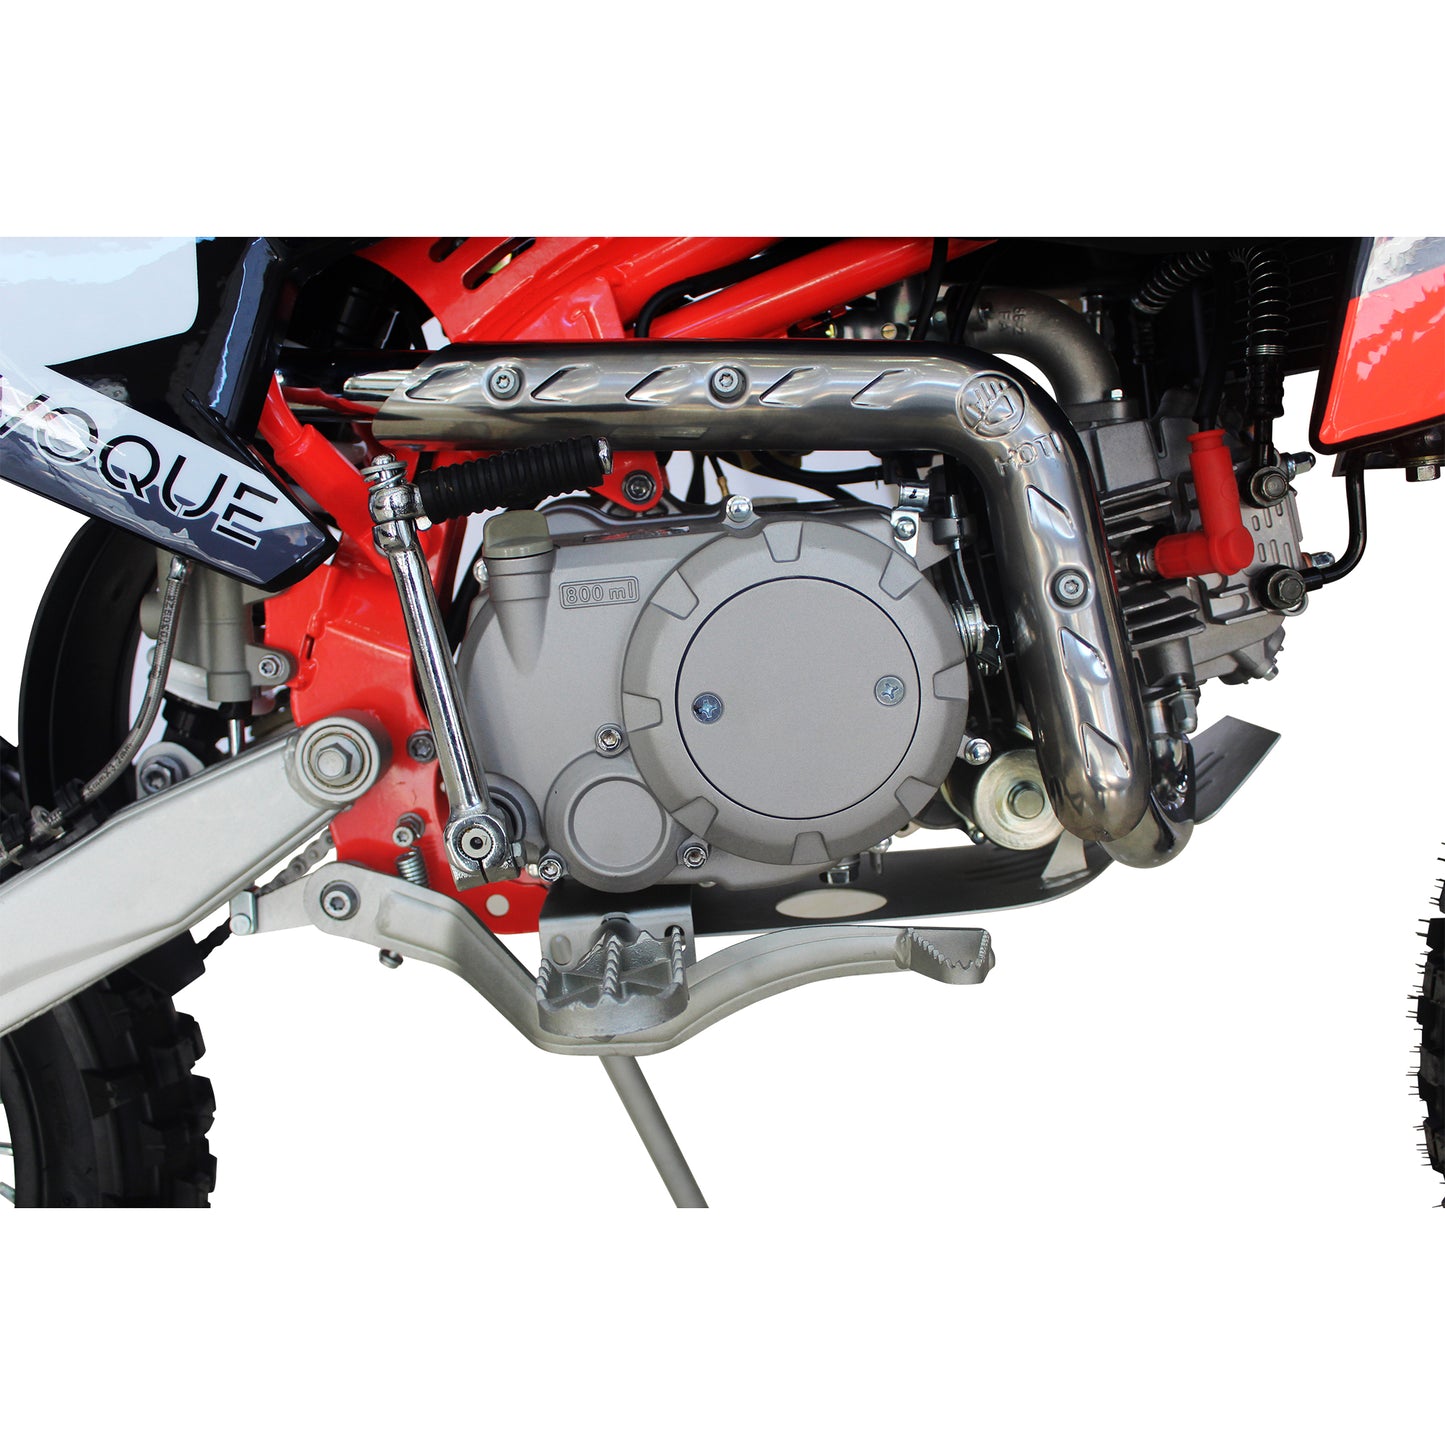 VQ-150RL | 150cc Dirt Bike